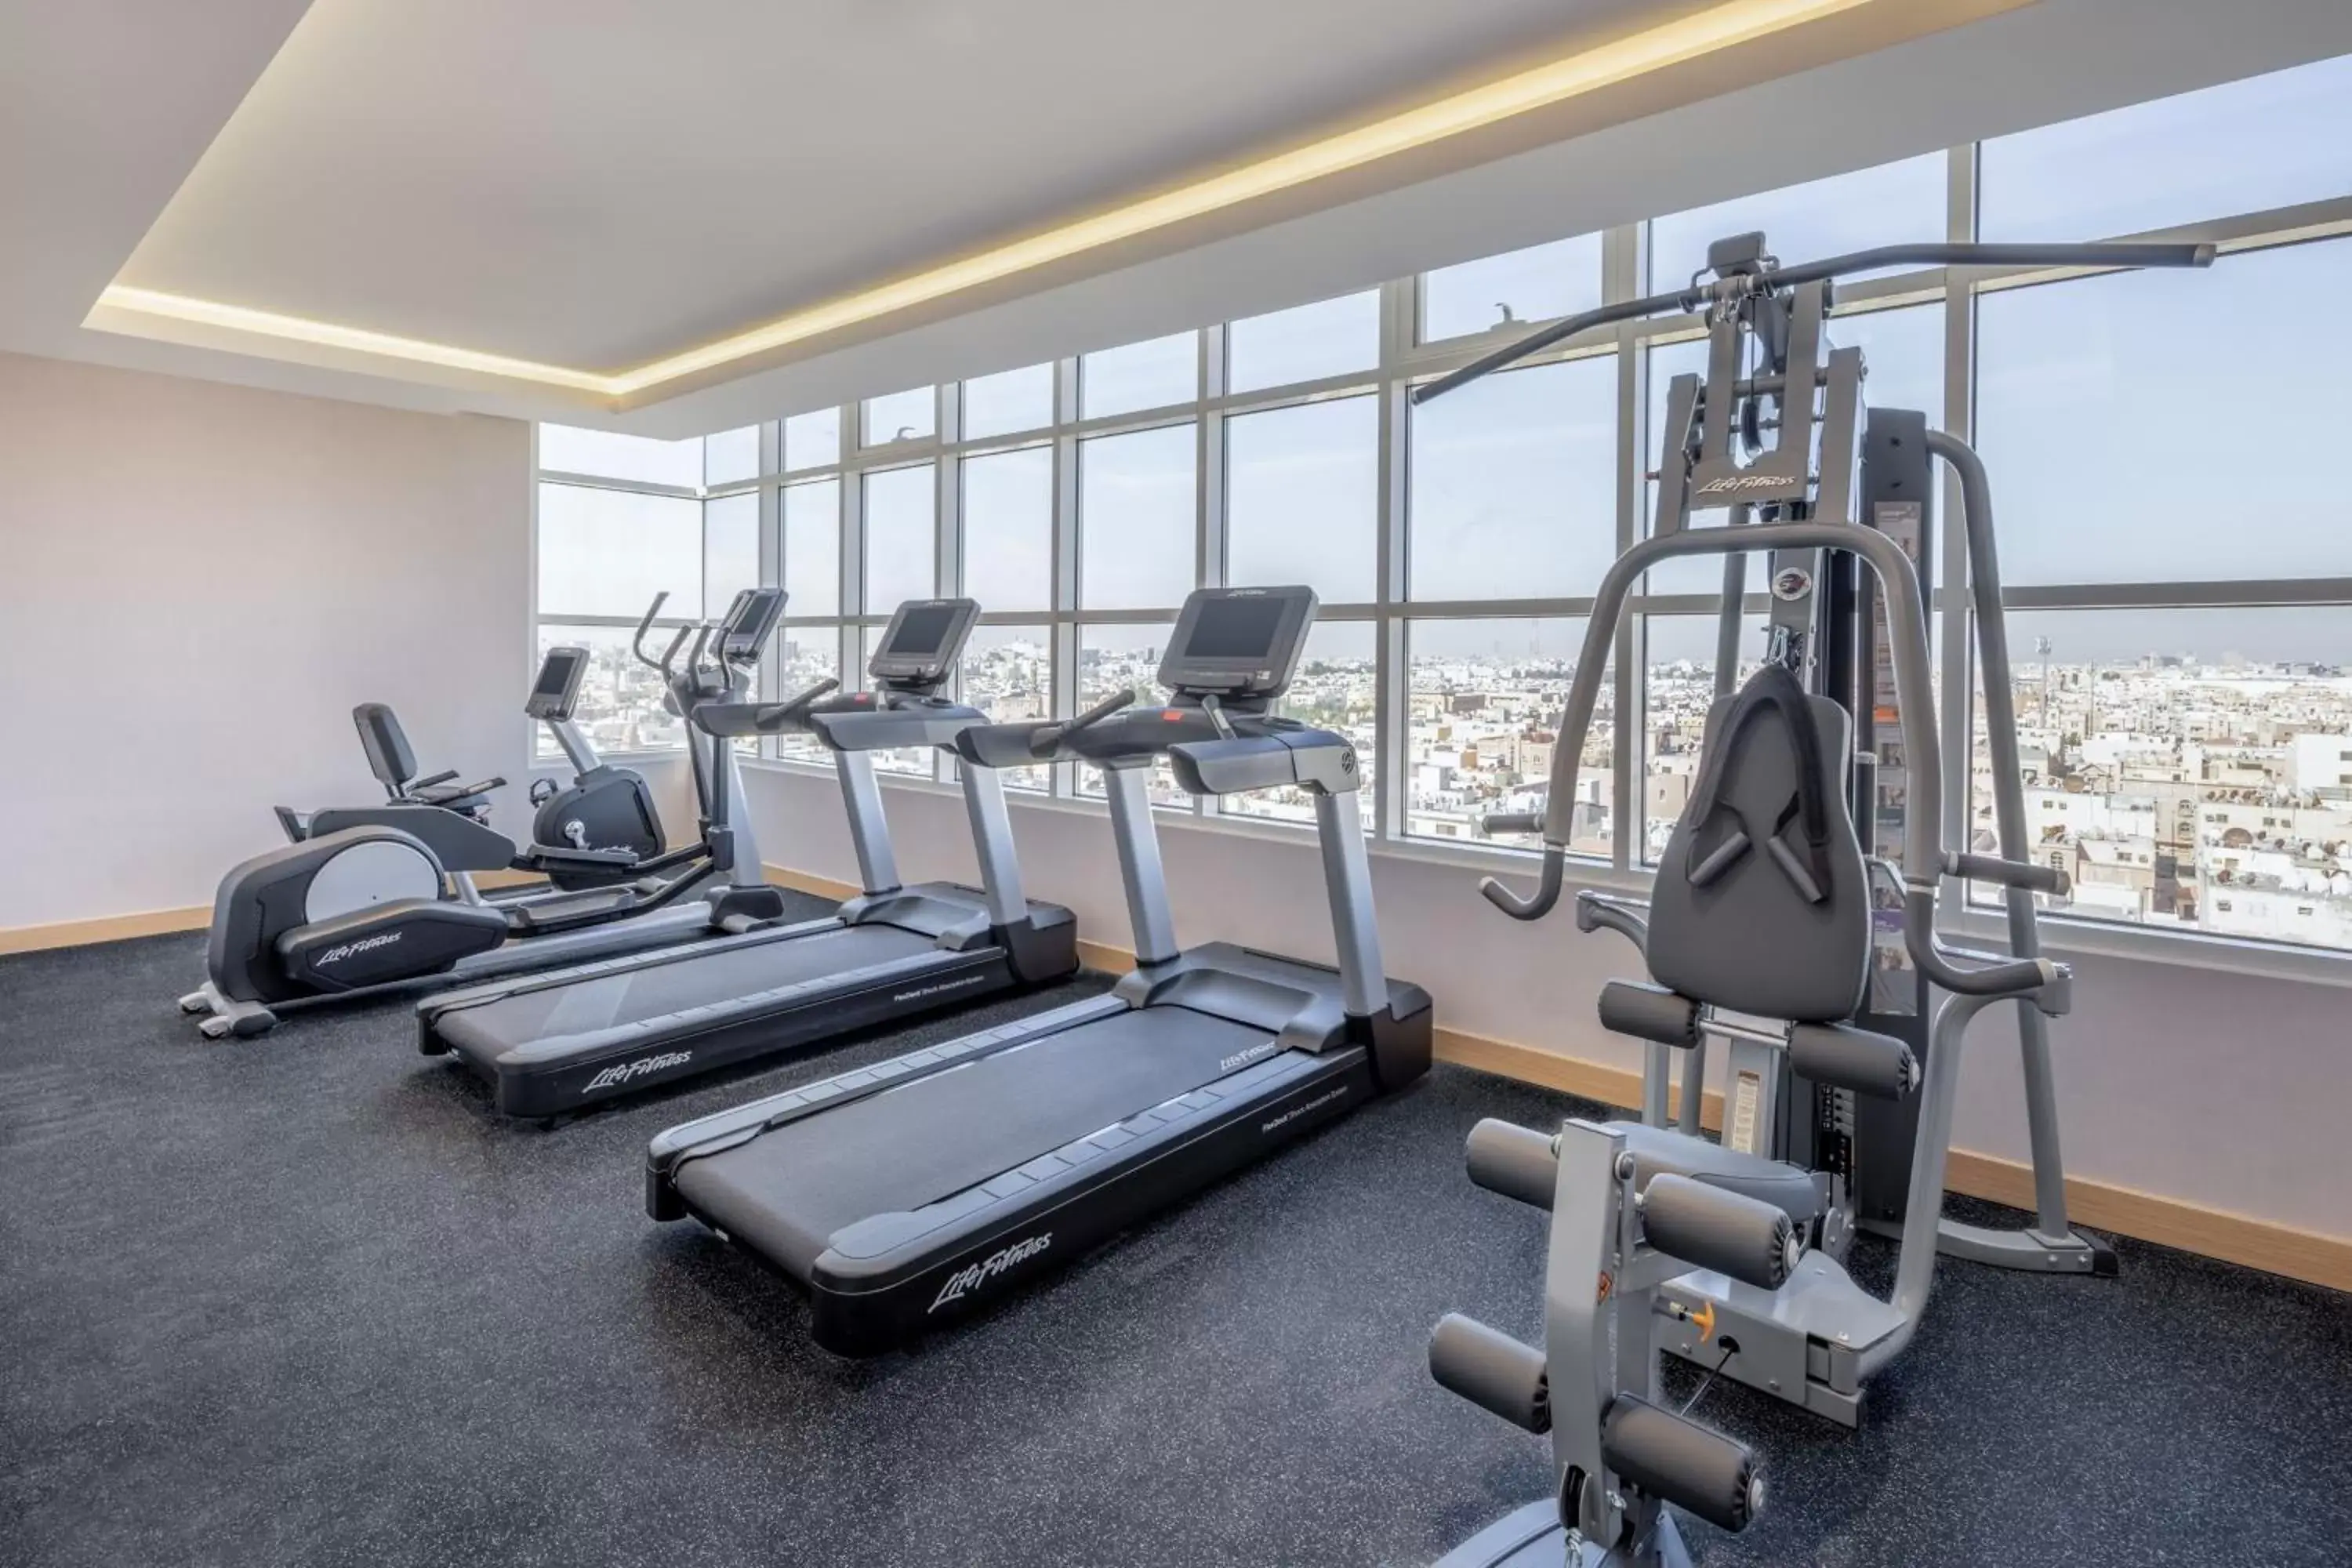 Fitness centre/facilities, Fitness Center/Facilities in Residence Inn by Marriott Dammam